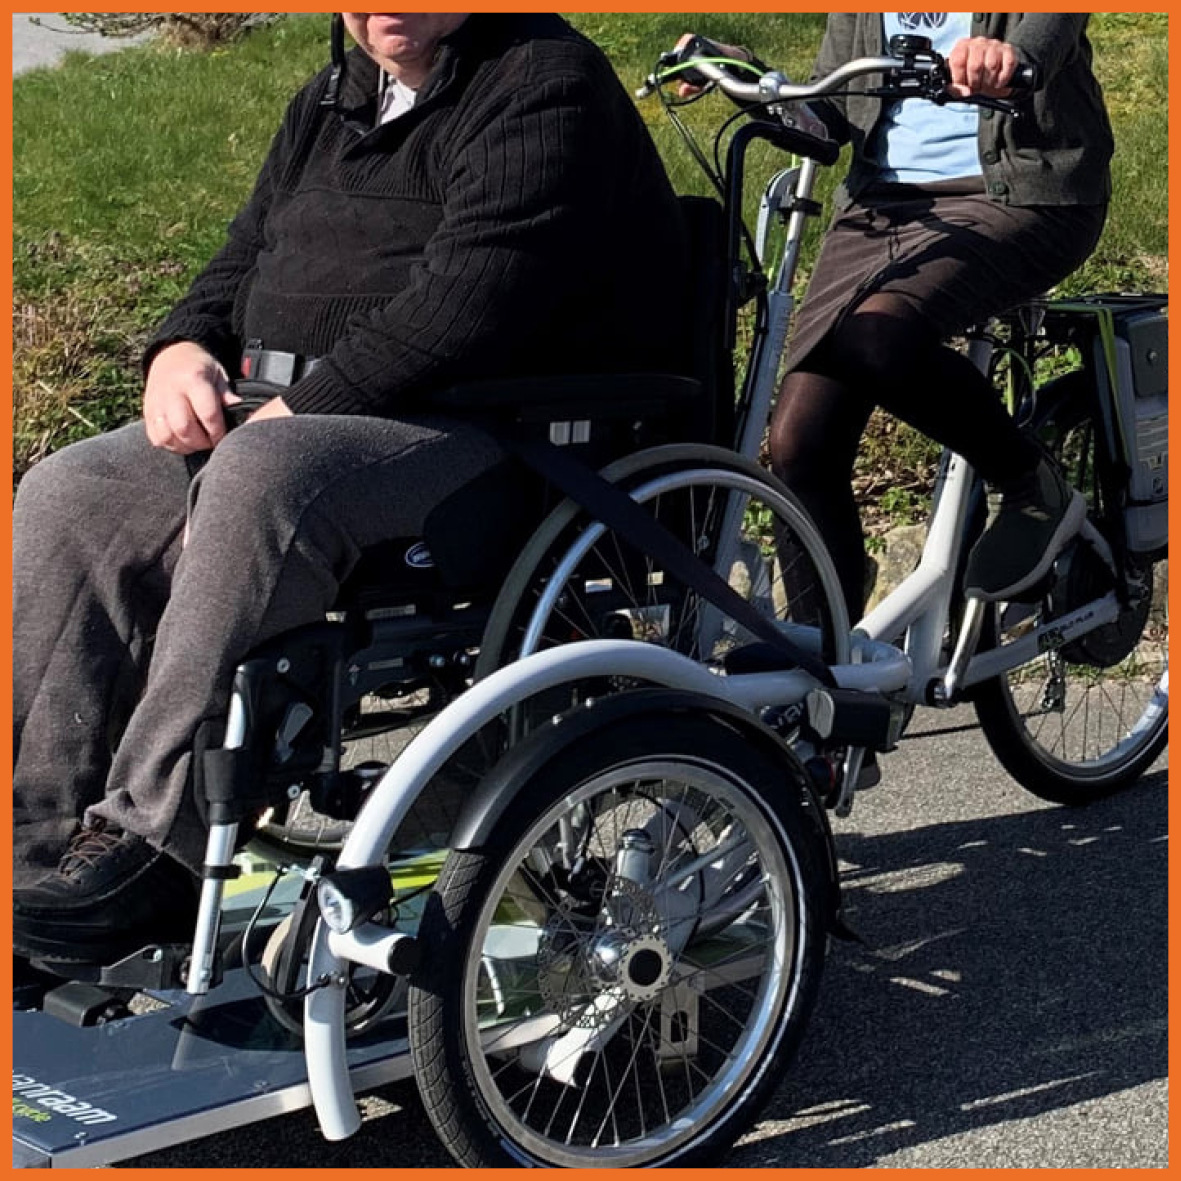 Billede af to personer på en cykel med en kørestol på.